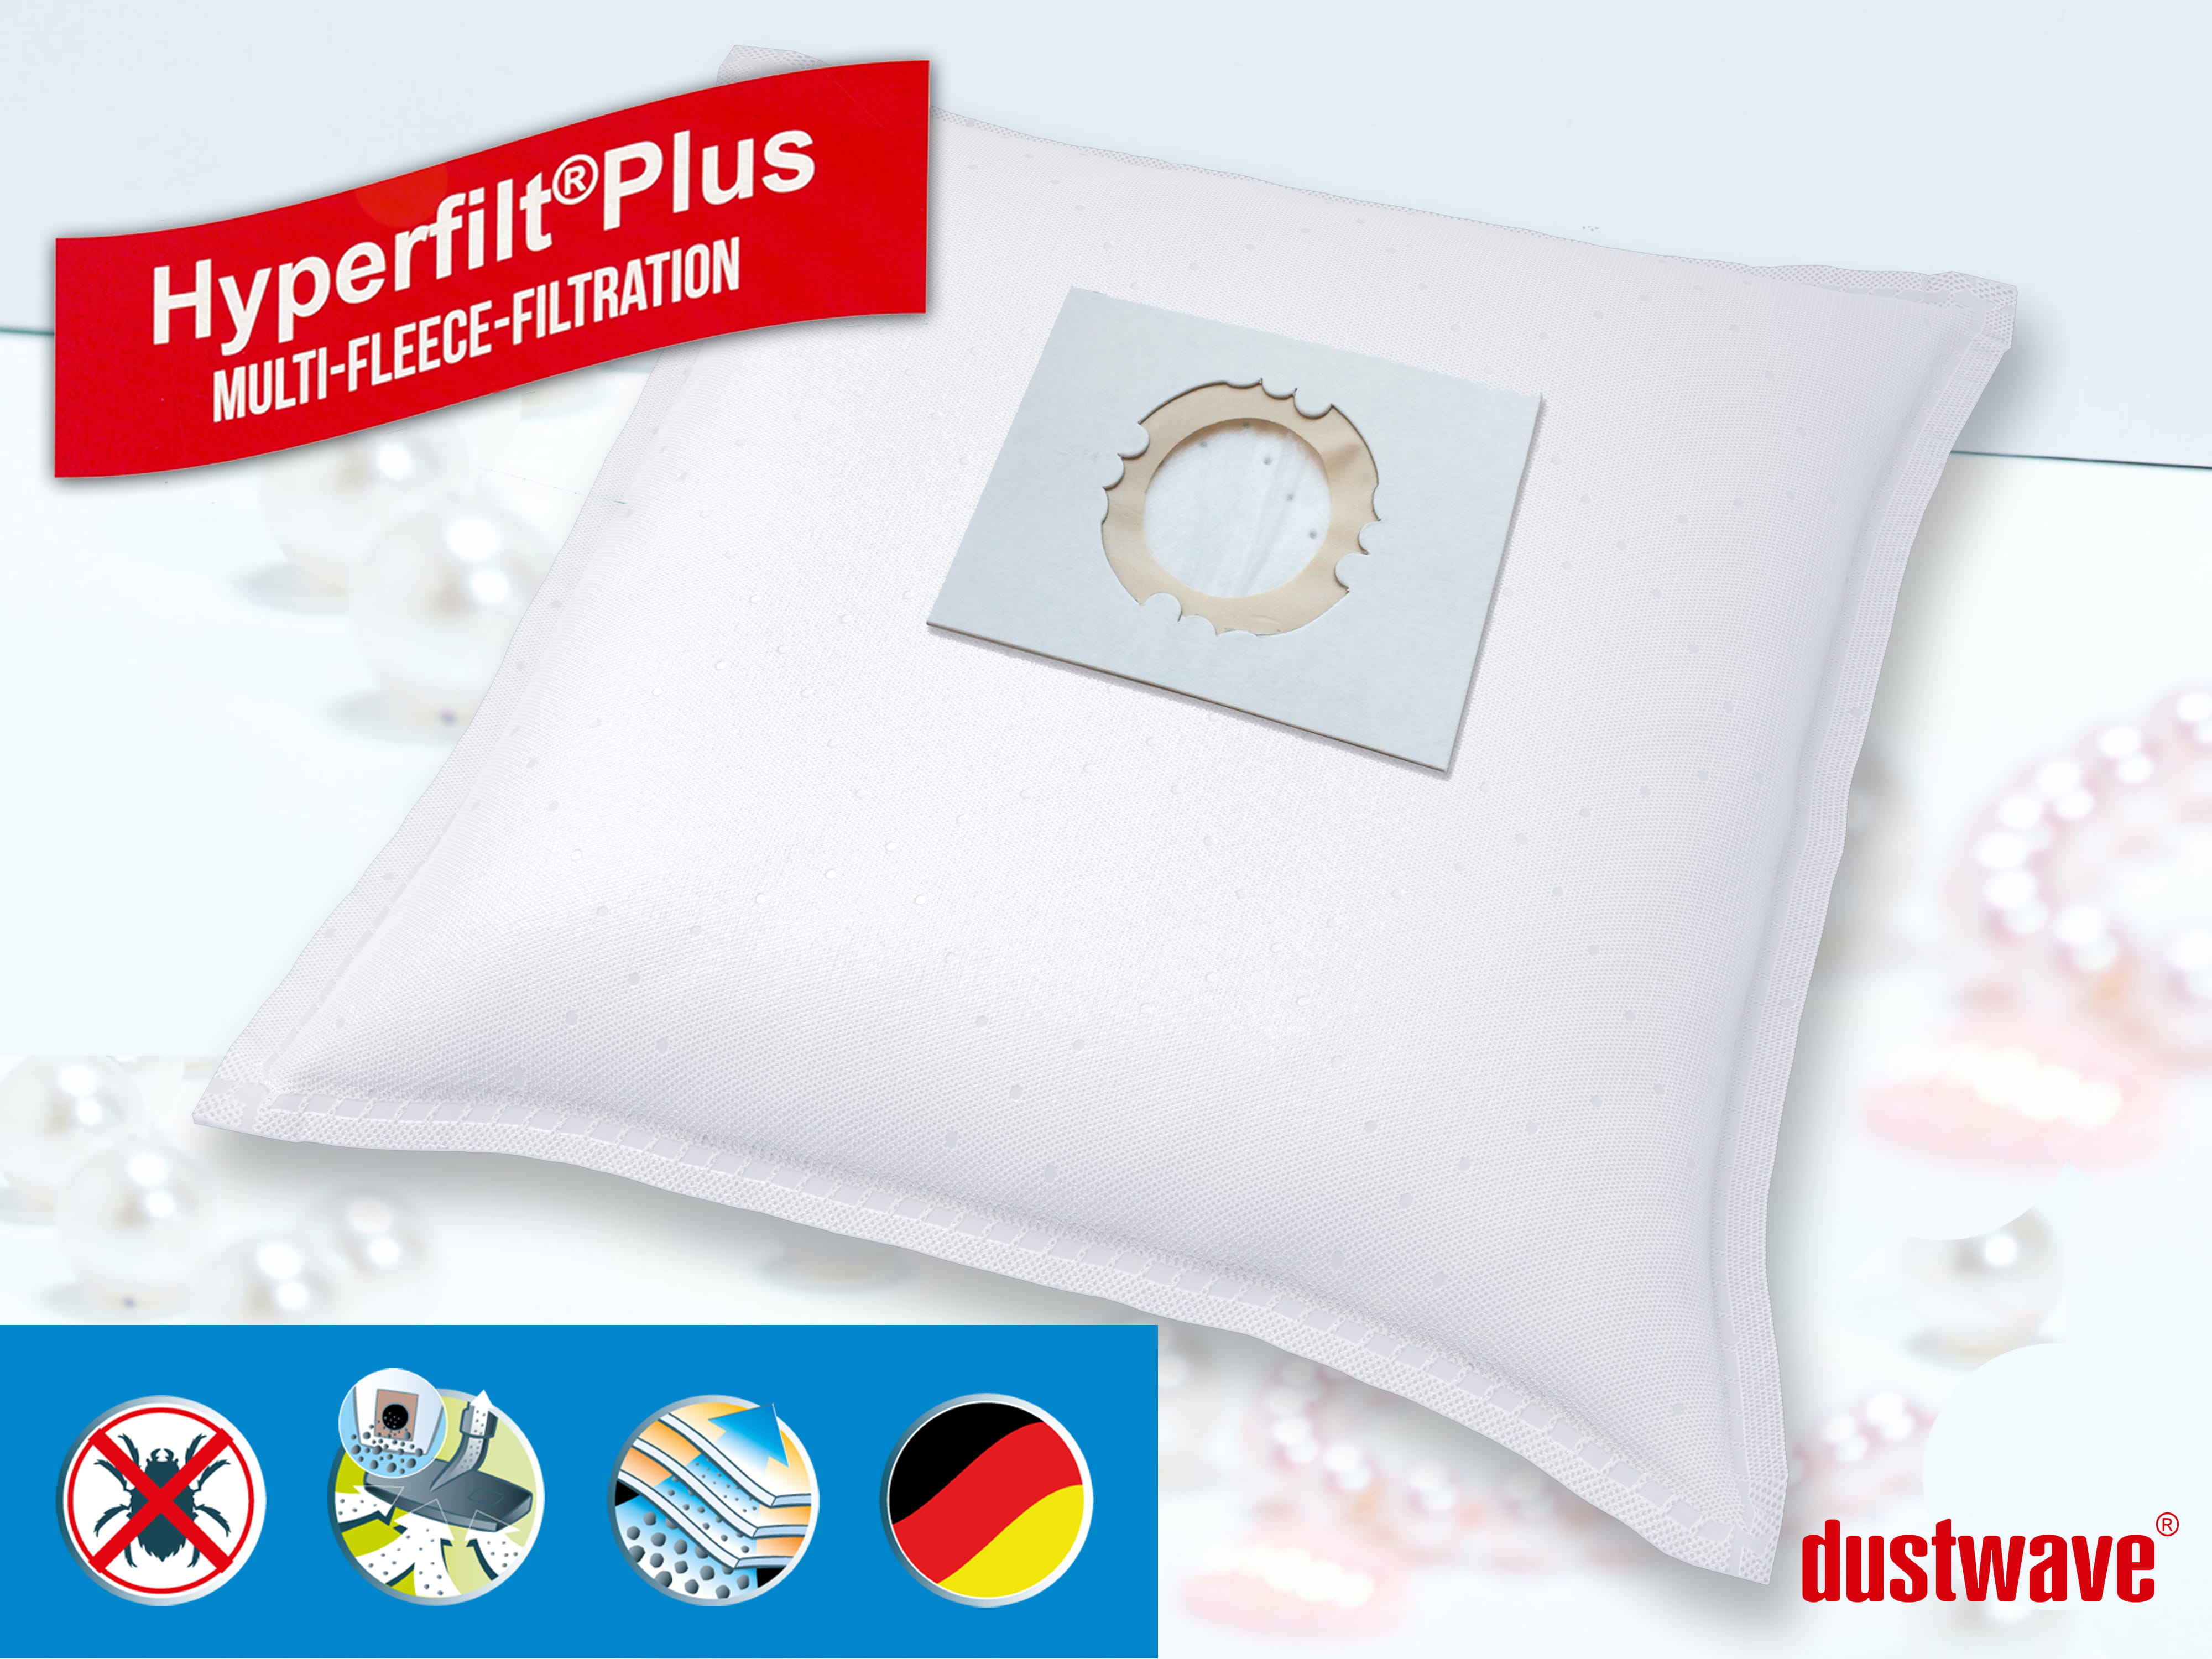 Dustwave® 10 Staubsaugerbeutel für AEG Multi 3in1 - hocheffizient, mehrlagiges Mikrovlies mit Hygieneverschluss - Made in Germany